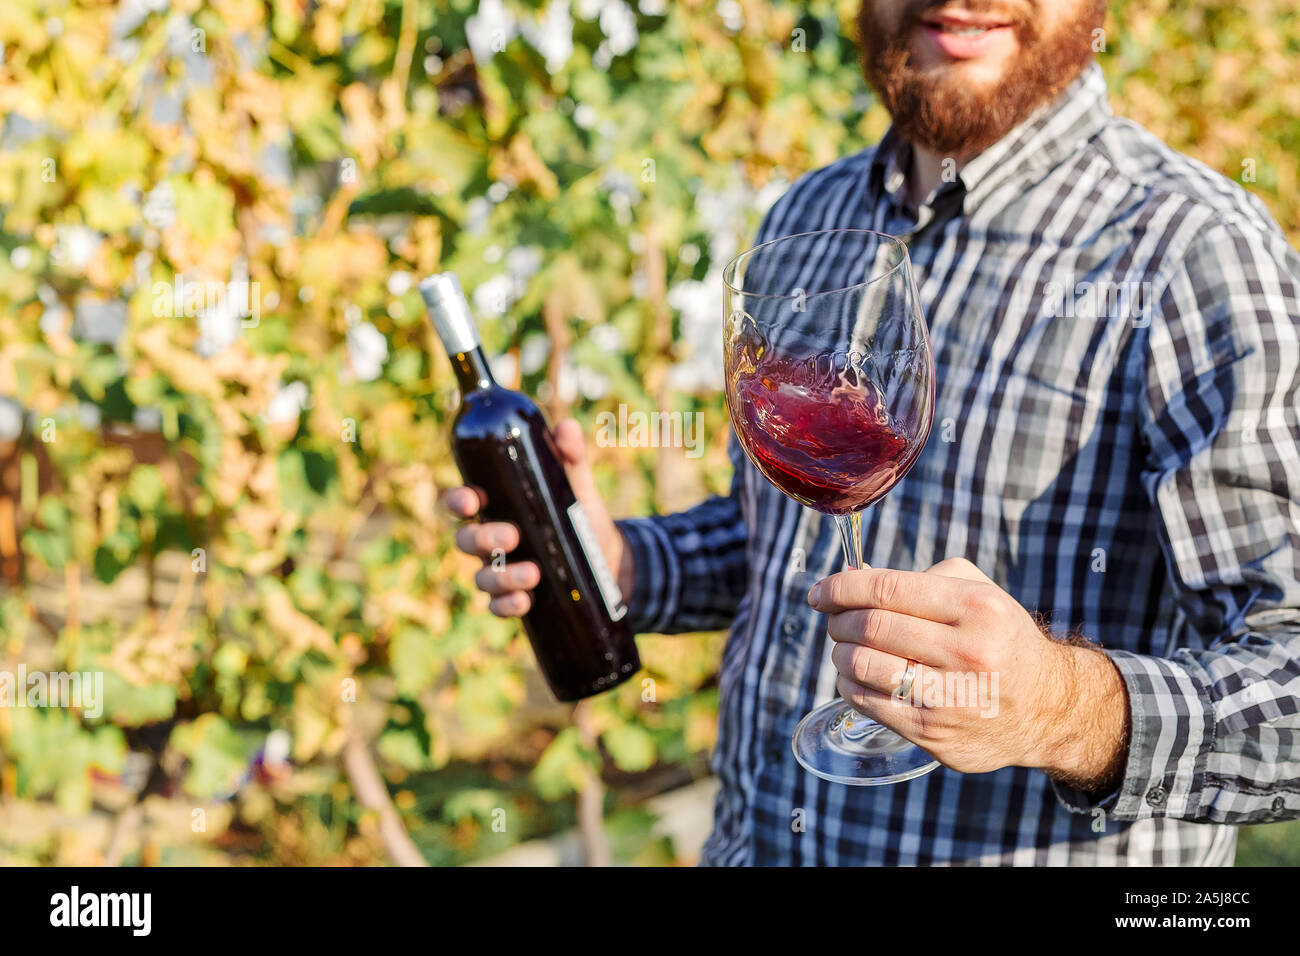 Portrait von stattlichen Winzer in seiner Hand Flasche und ein Glas Rotwein und Verkostung, Kontrolle Wein Qualität beim Stehen in der Weinberge Stockfoto